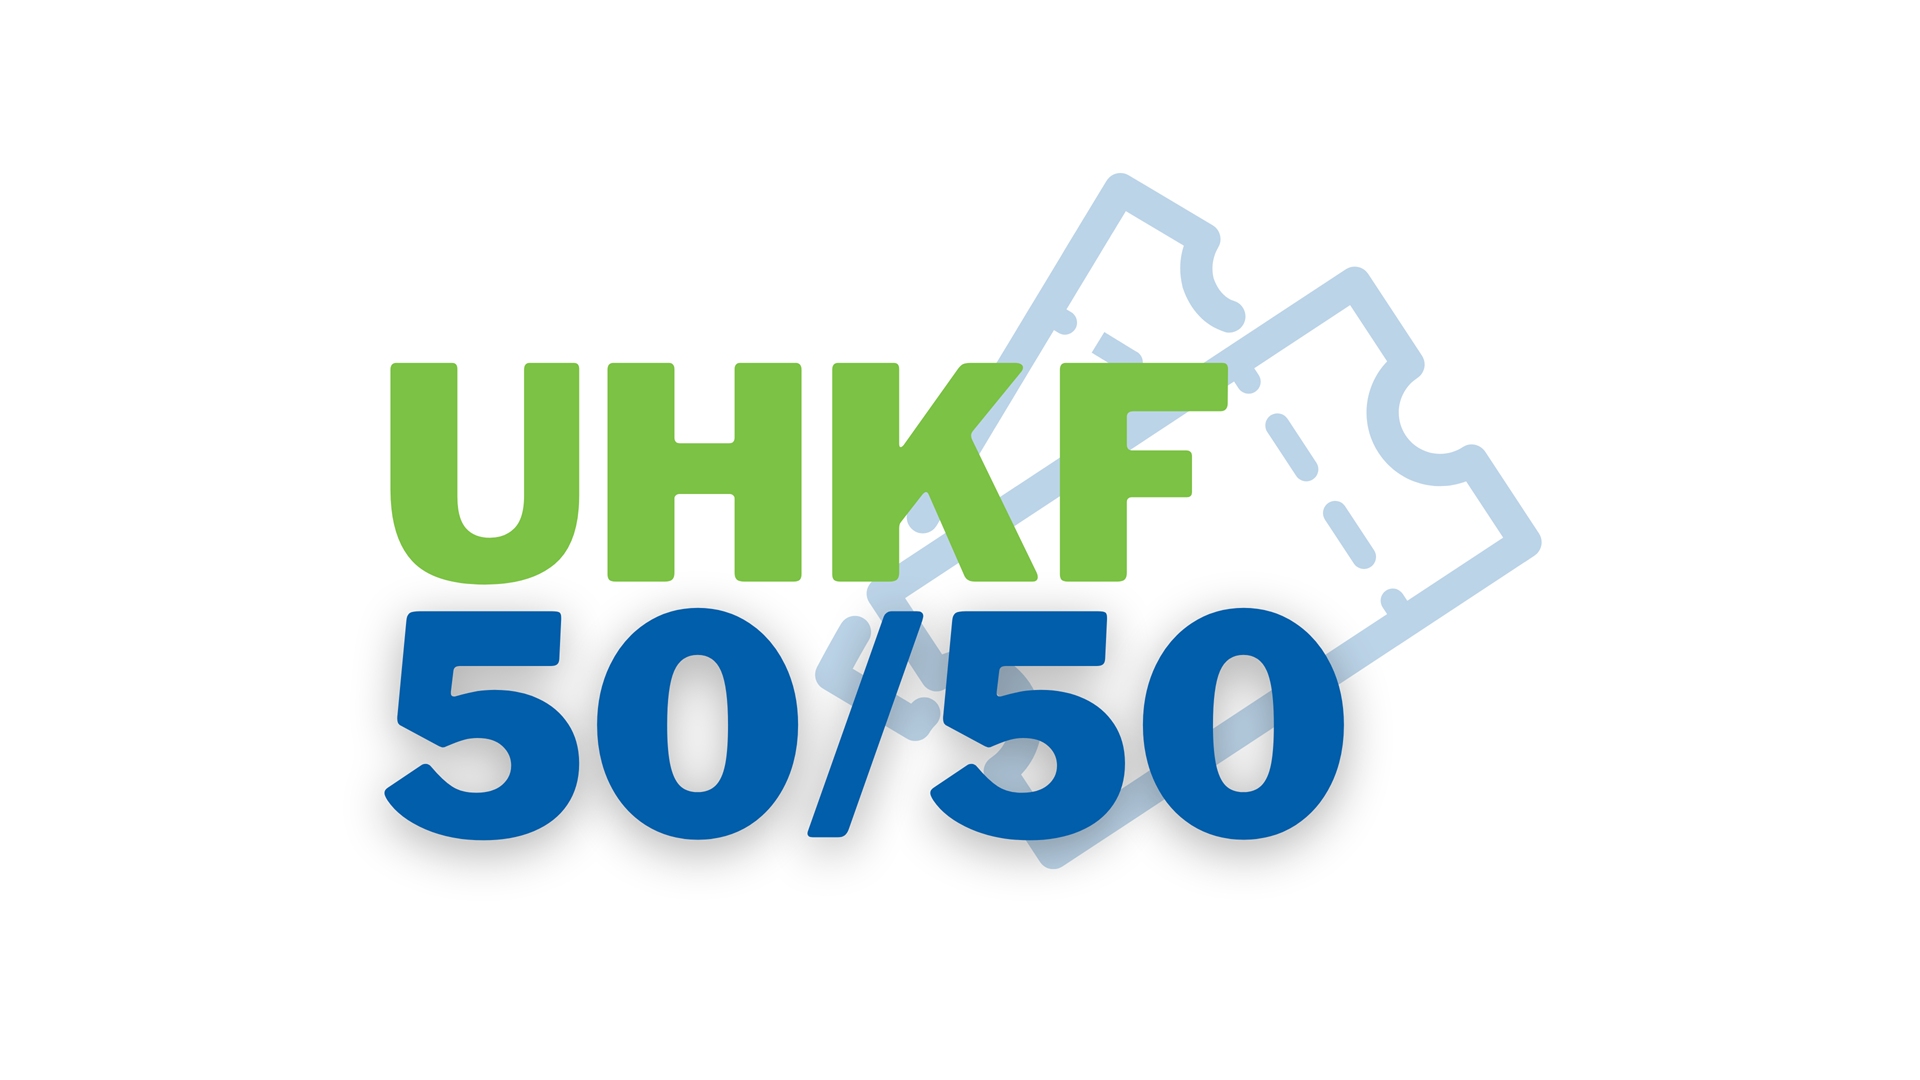 UHKF 50/50 February Draw Image